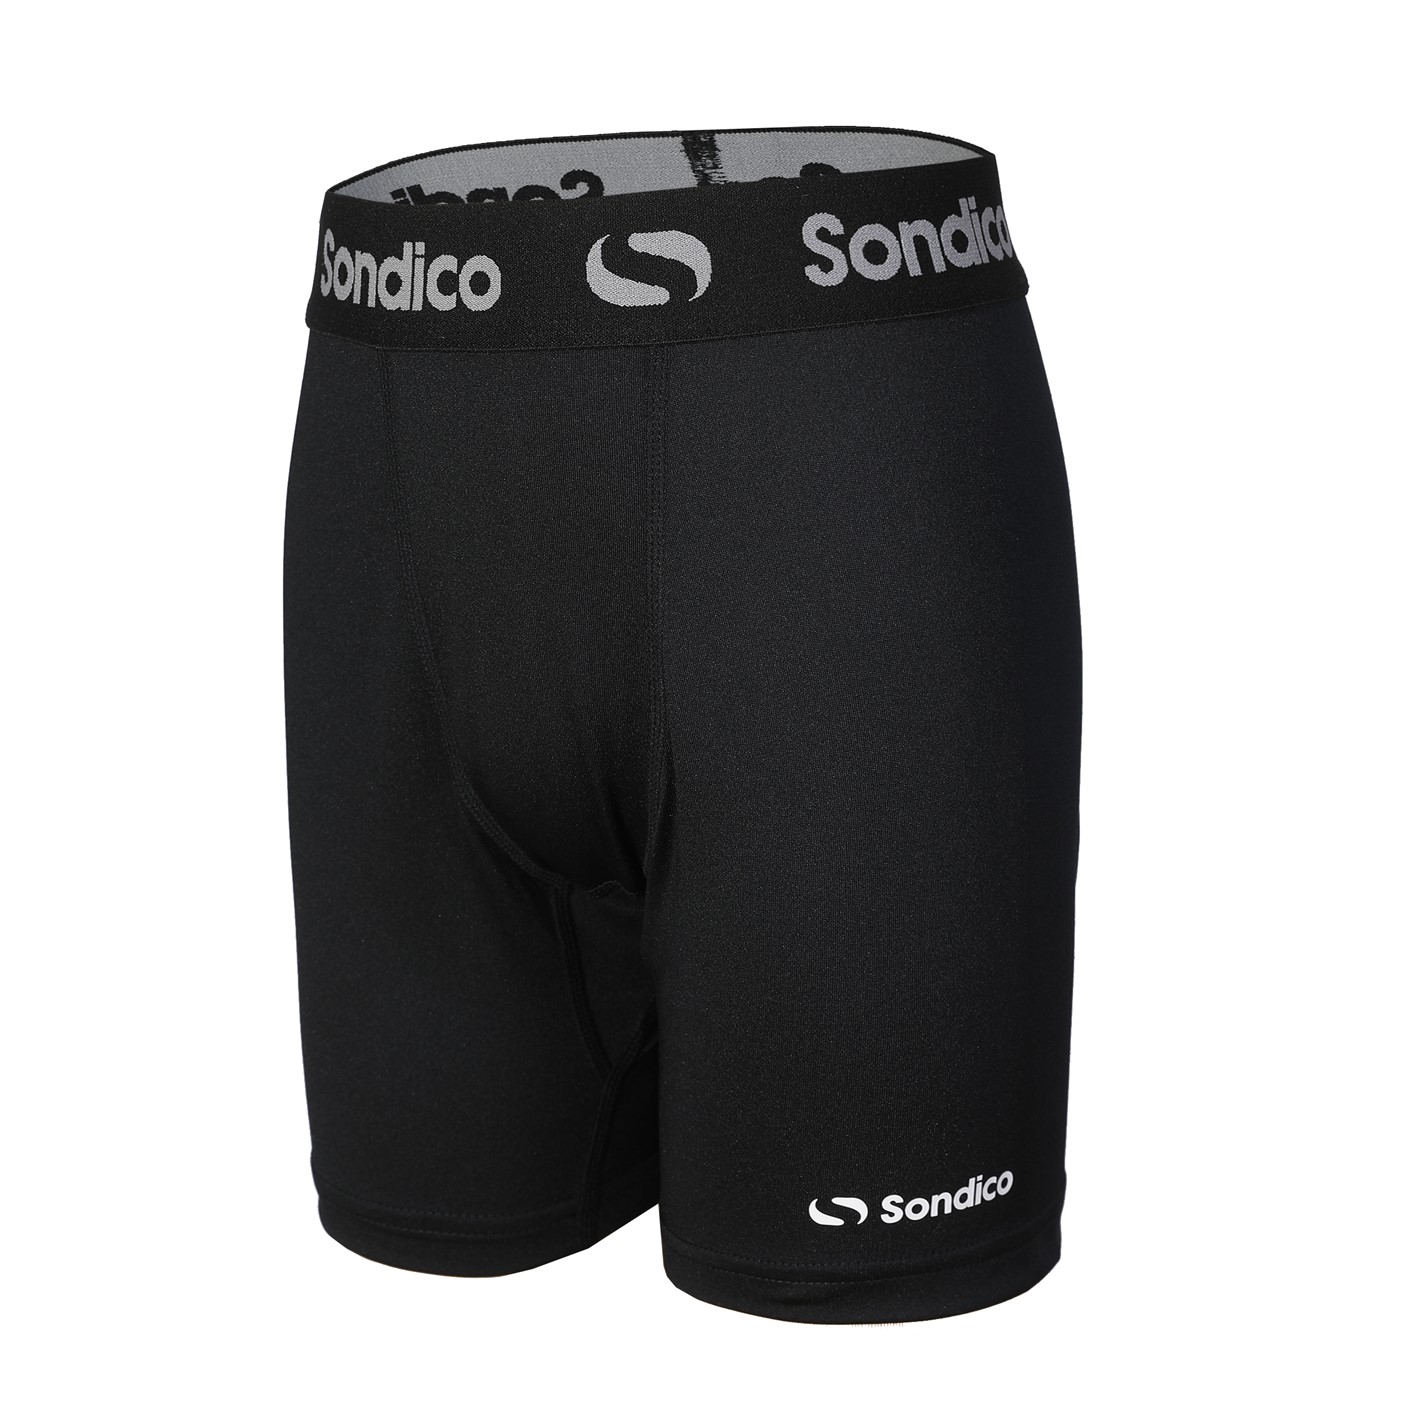 Sondico Core Shorts Juniors